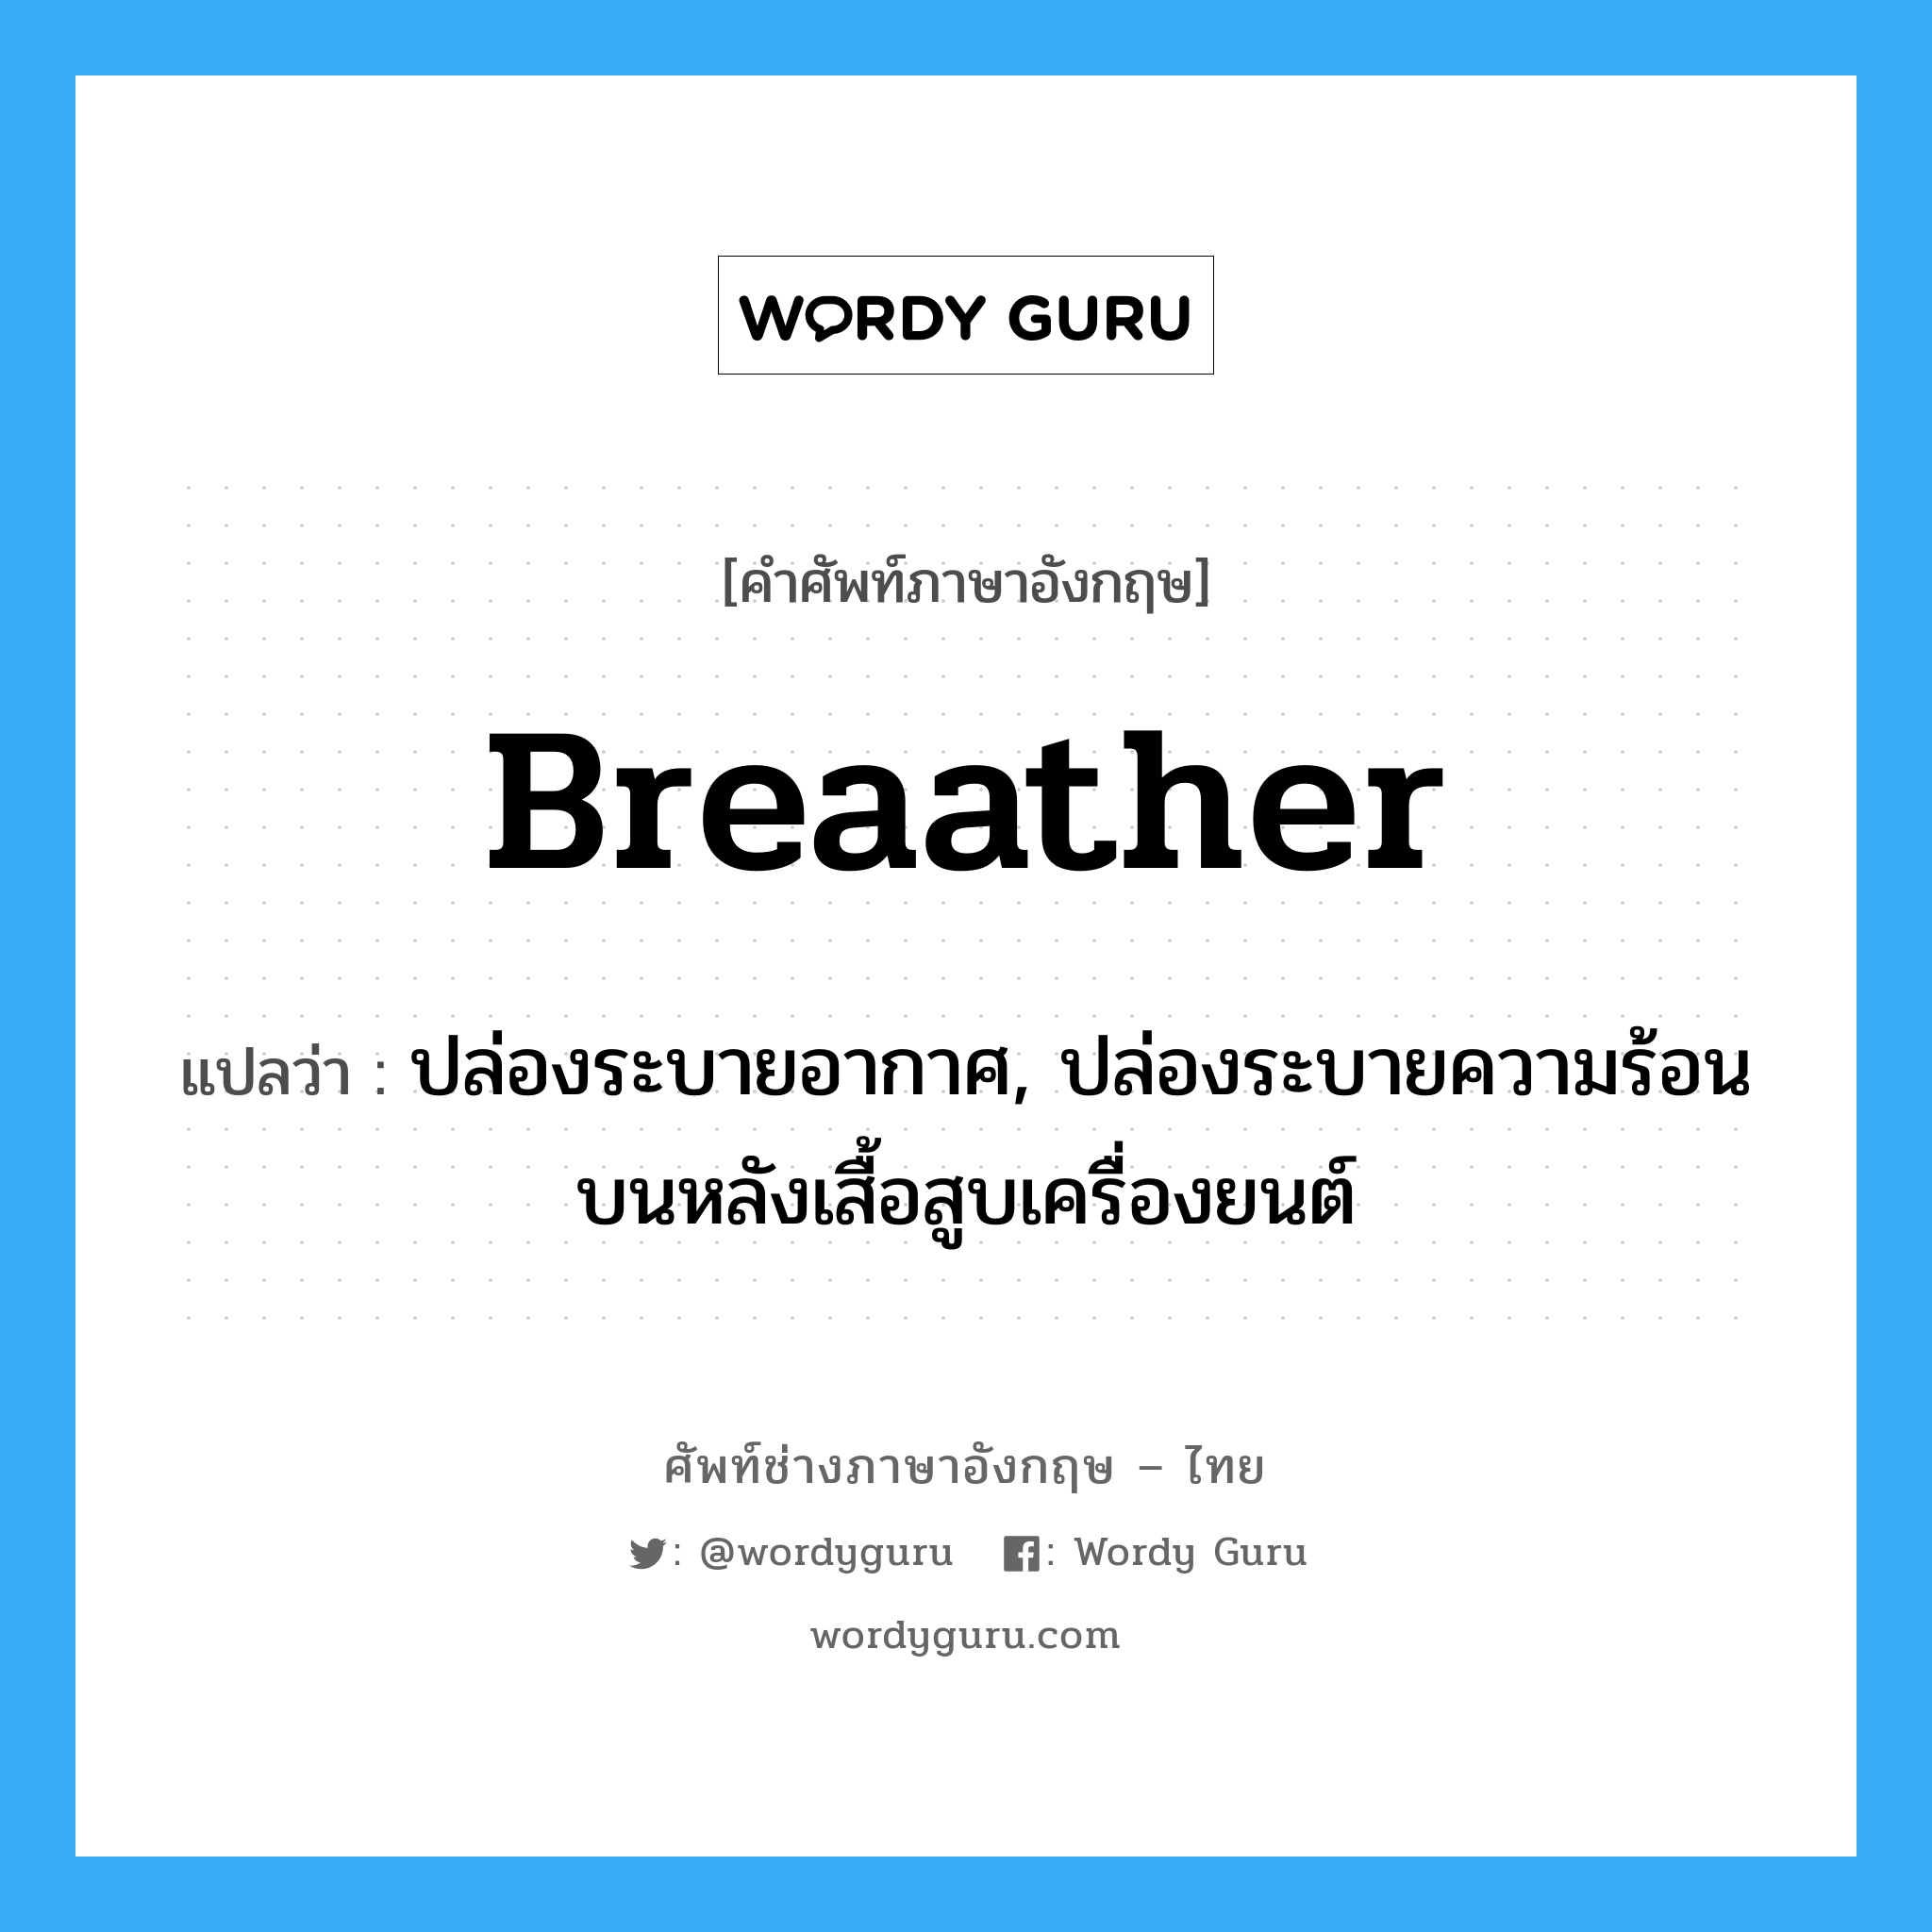 breaather แปลว่า?, คำศัพท์ช่างภาษาอังกฤษ - ไทย breaather คำศัพท์ภาษาอังกฤษ breaather แปลว่า ปล่องระบายอากาศ, ปล่องระบายความร้อนบนหลังเสื้อสูบเครื่องยนต์